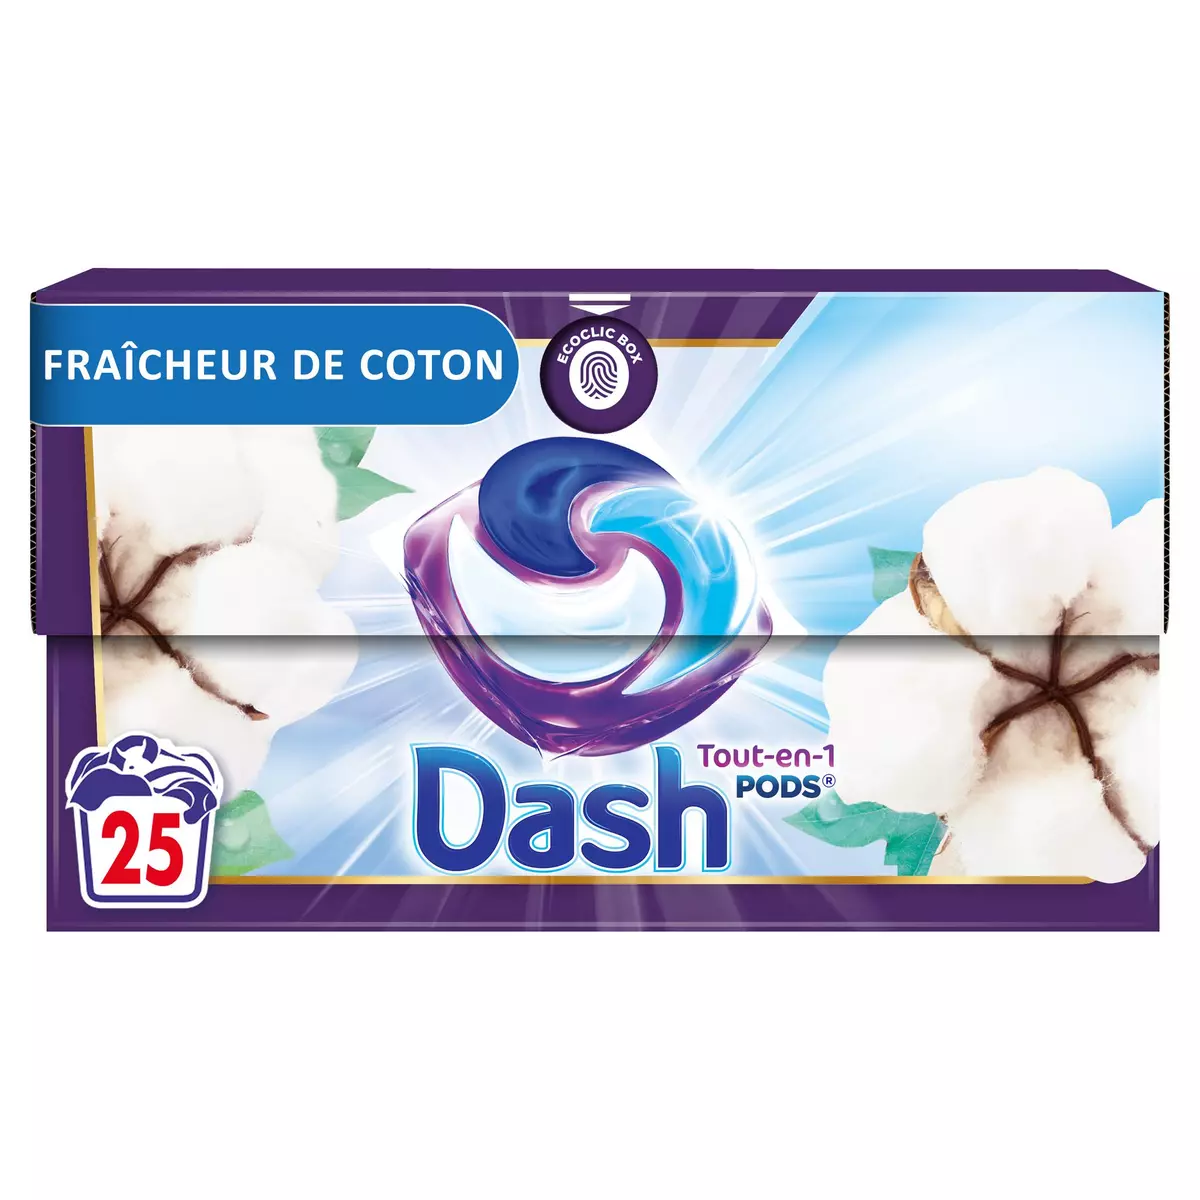 DASH Pods Lessive en capsules tout en 1 sélection florale fraîcheur de coton 25 capsules